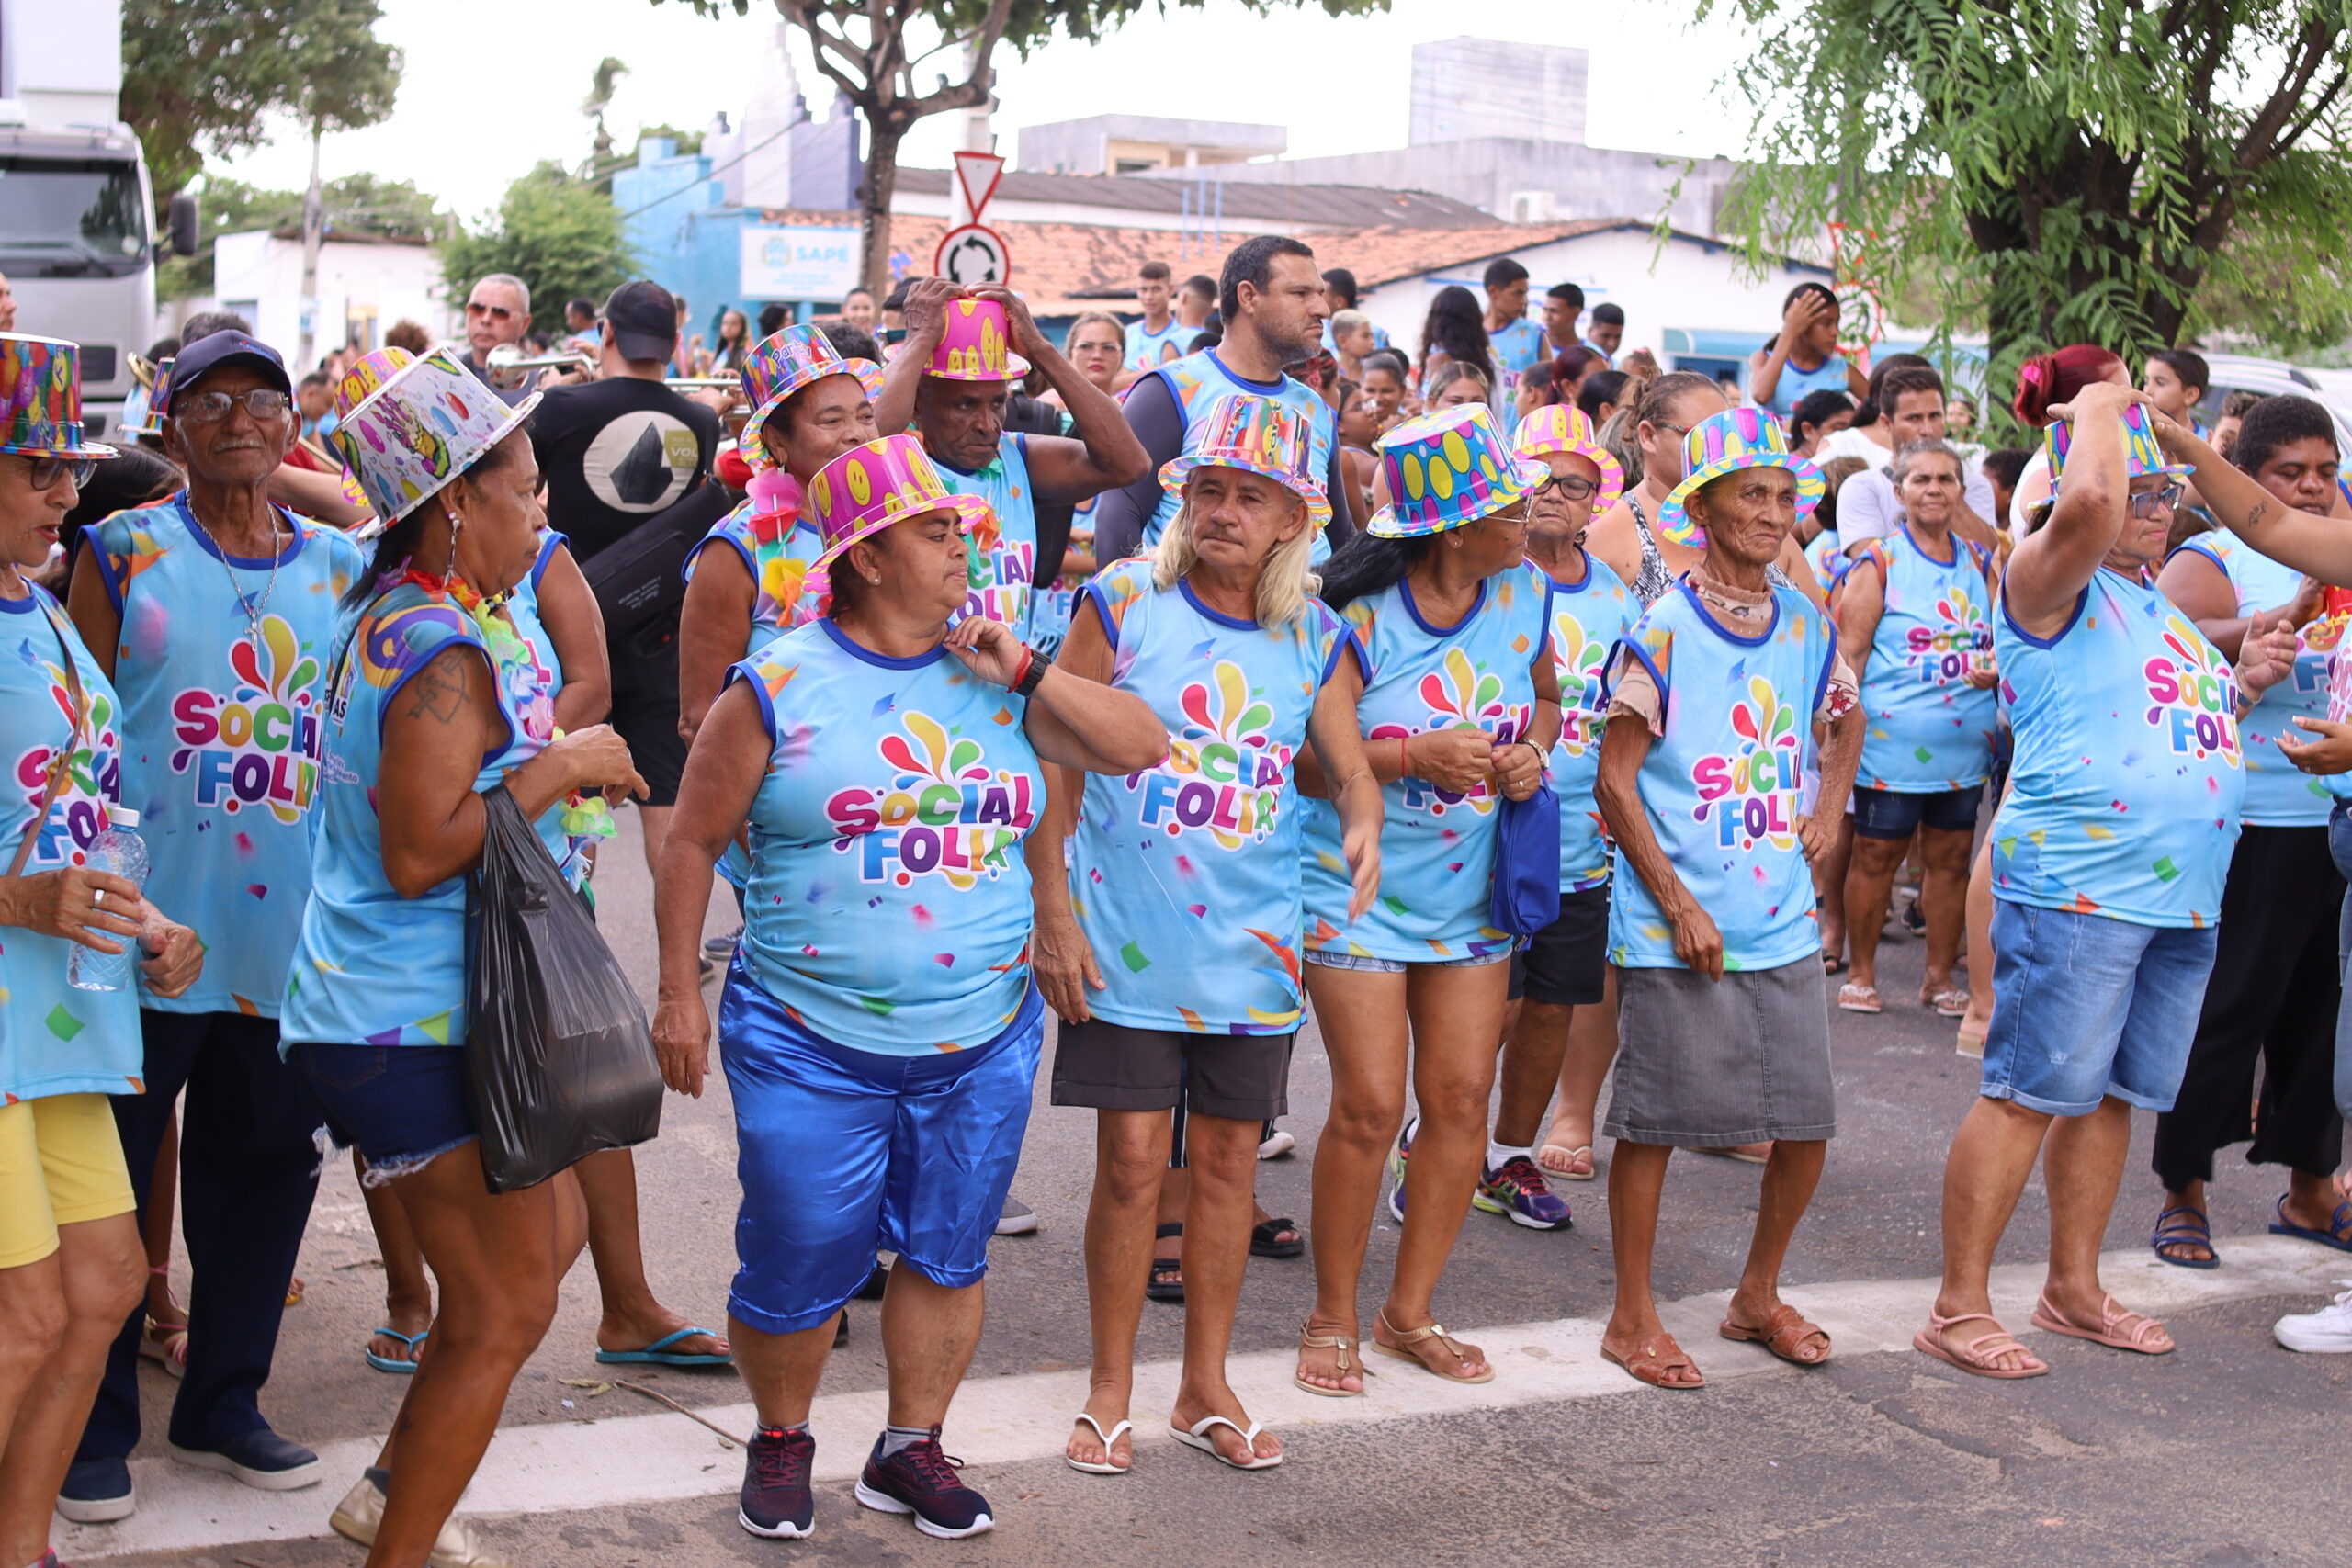 Bloco ‘Social Folia’ desfila nas principais avenidas de Sapé com usuários de programas sociais